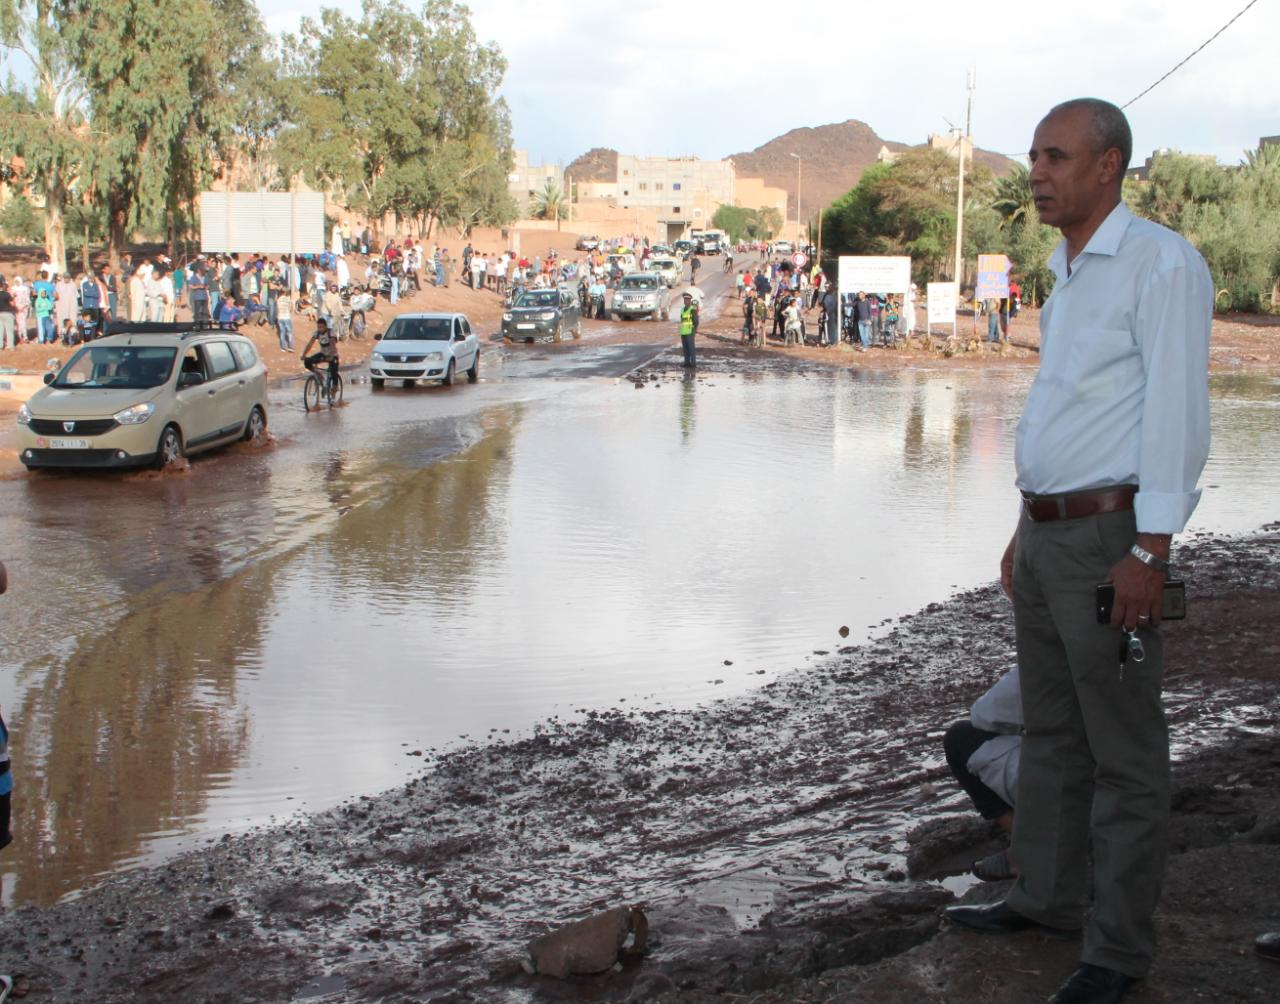 بنجيري : مجموعة من الاجراءات العملية تم إطلاقها بتارميكت تجنبا لجميع مخاطر الفيضانات